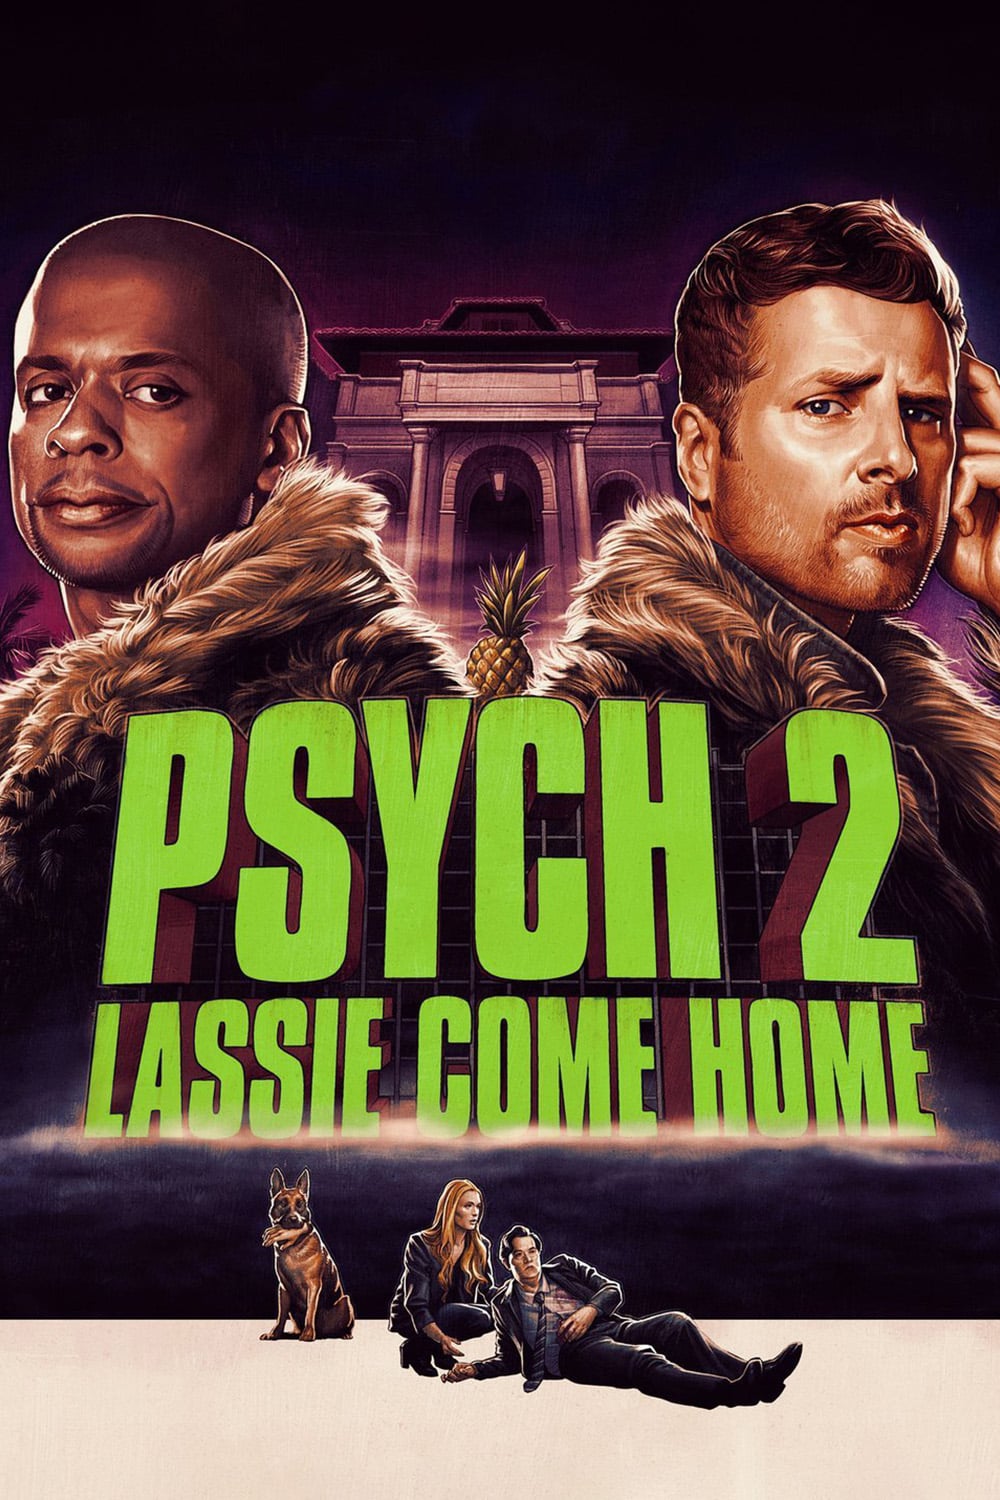 Psych 2: Lassie rentre à la maison